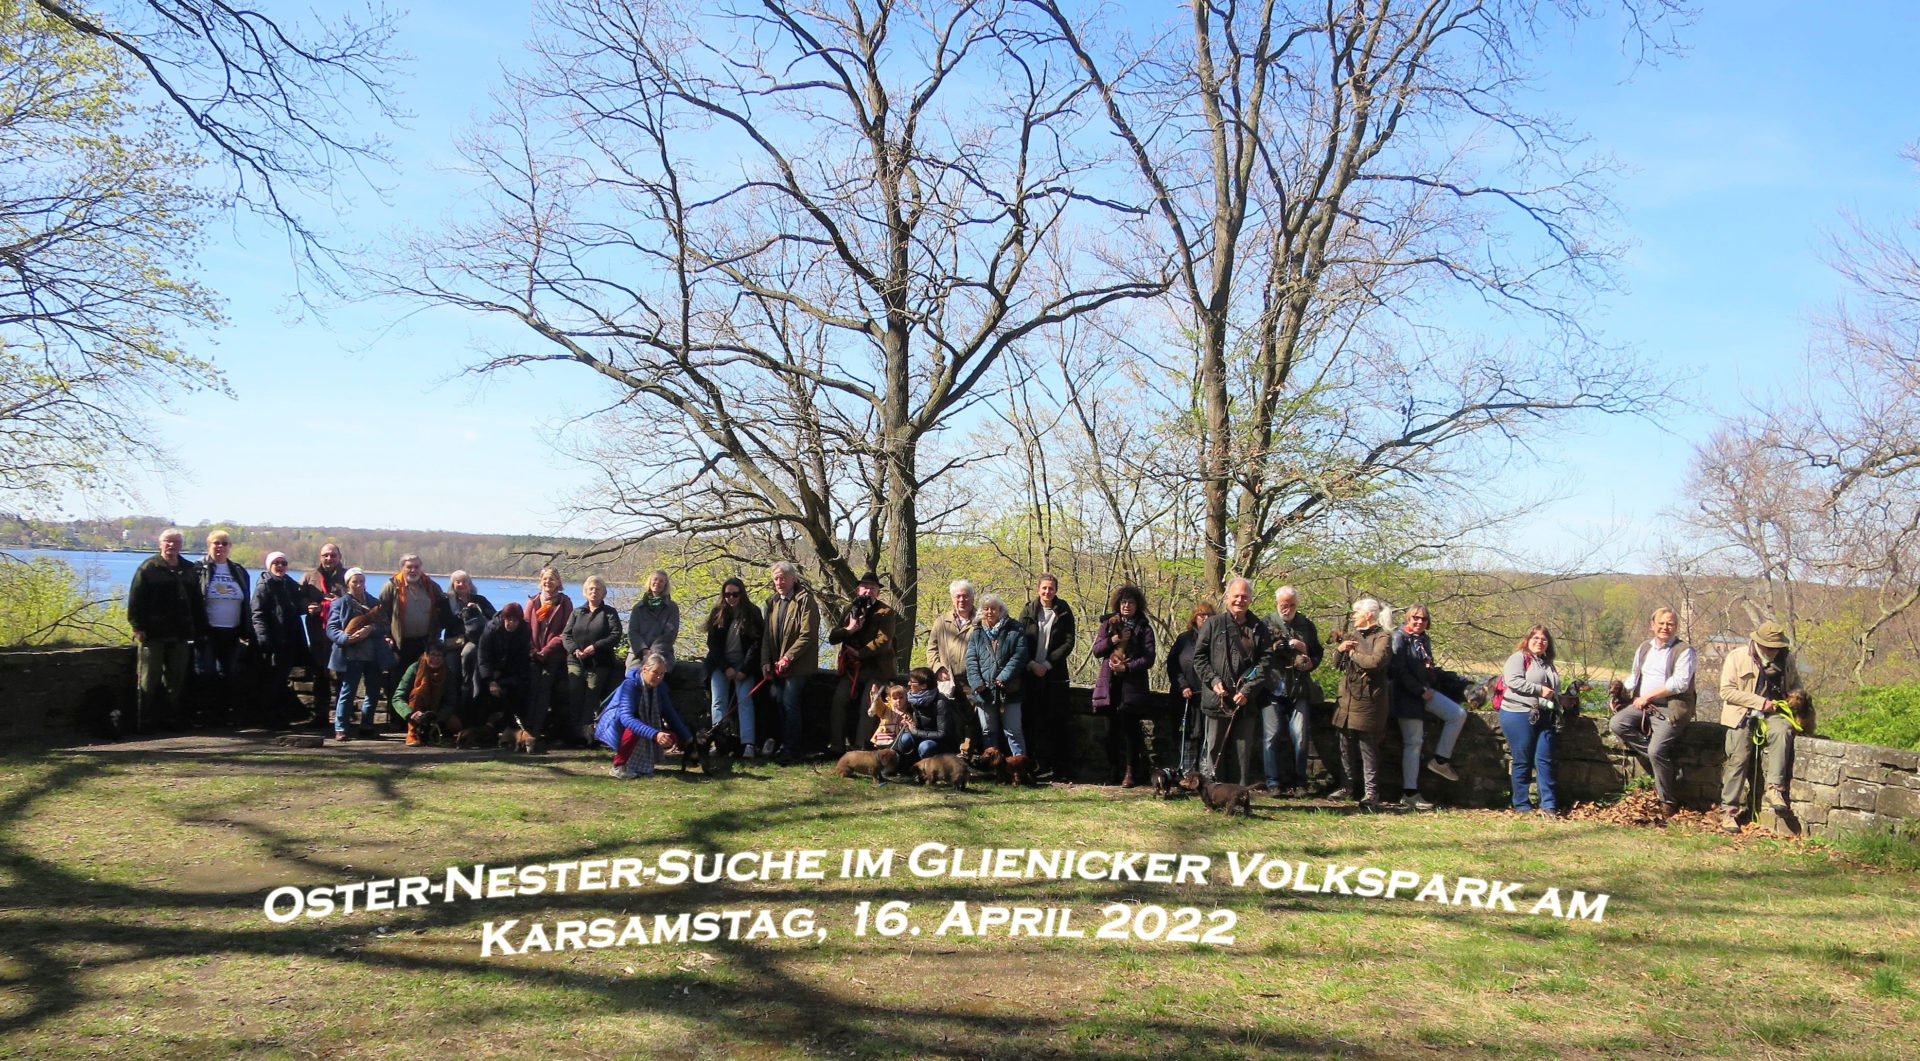 Oster-Nester-Suche am Karsamstag 2022 - Teckelgruppe Raben